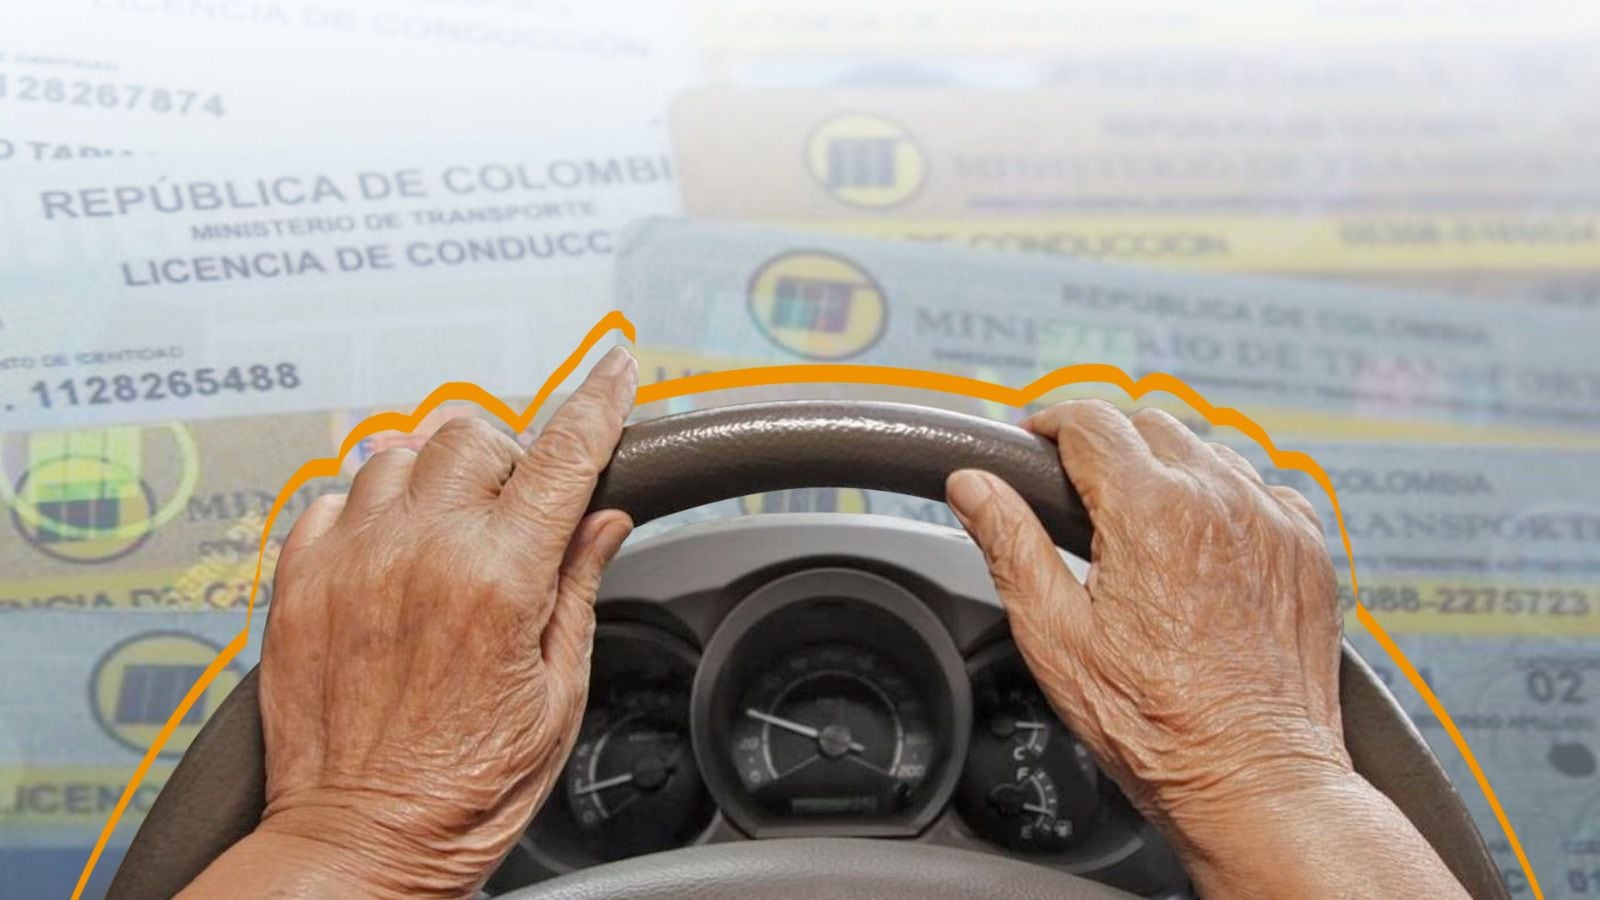 Las licencias de conducción deben ser renovadas luego de realizar un nuevo examen